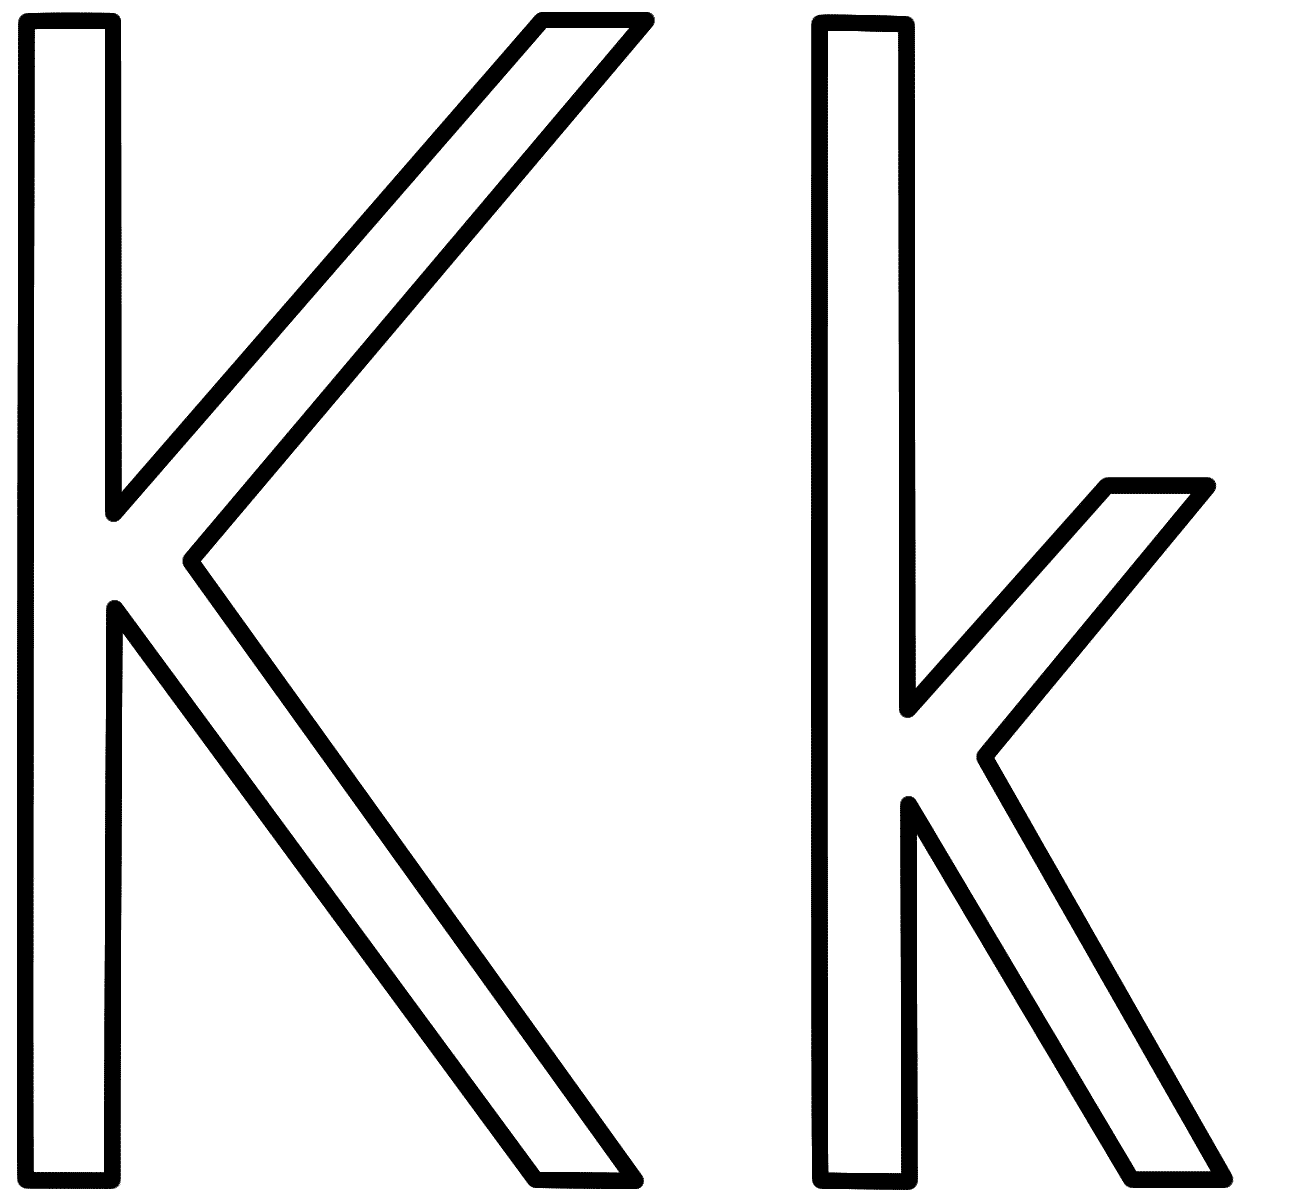 K N Logos